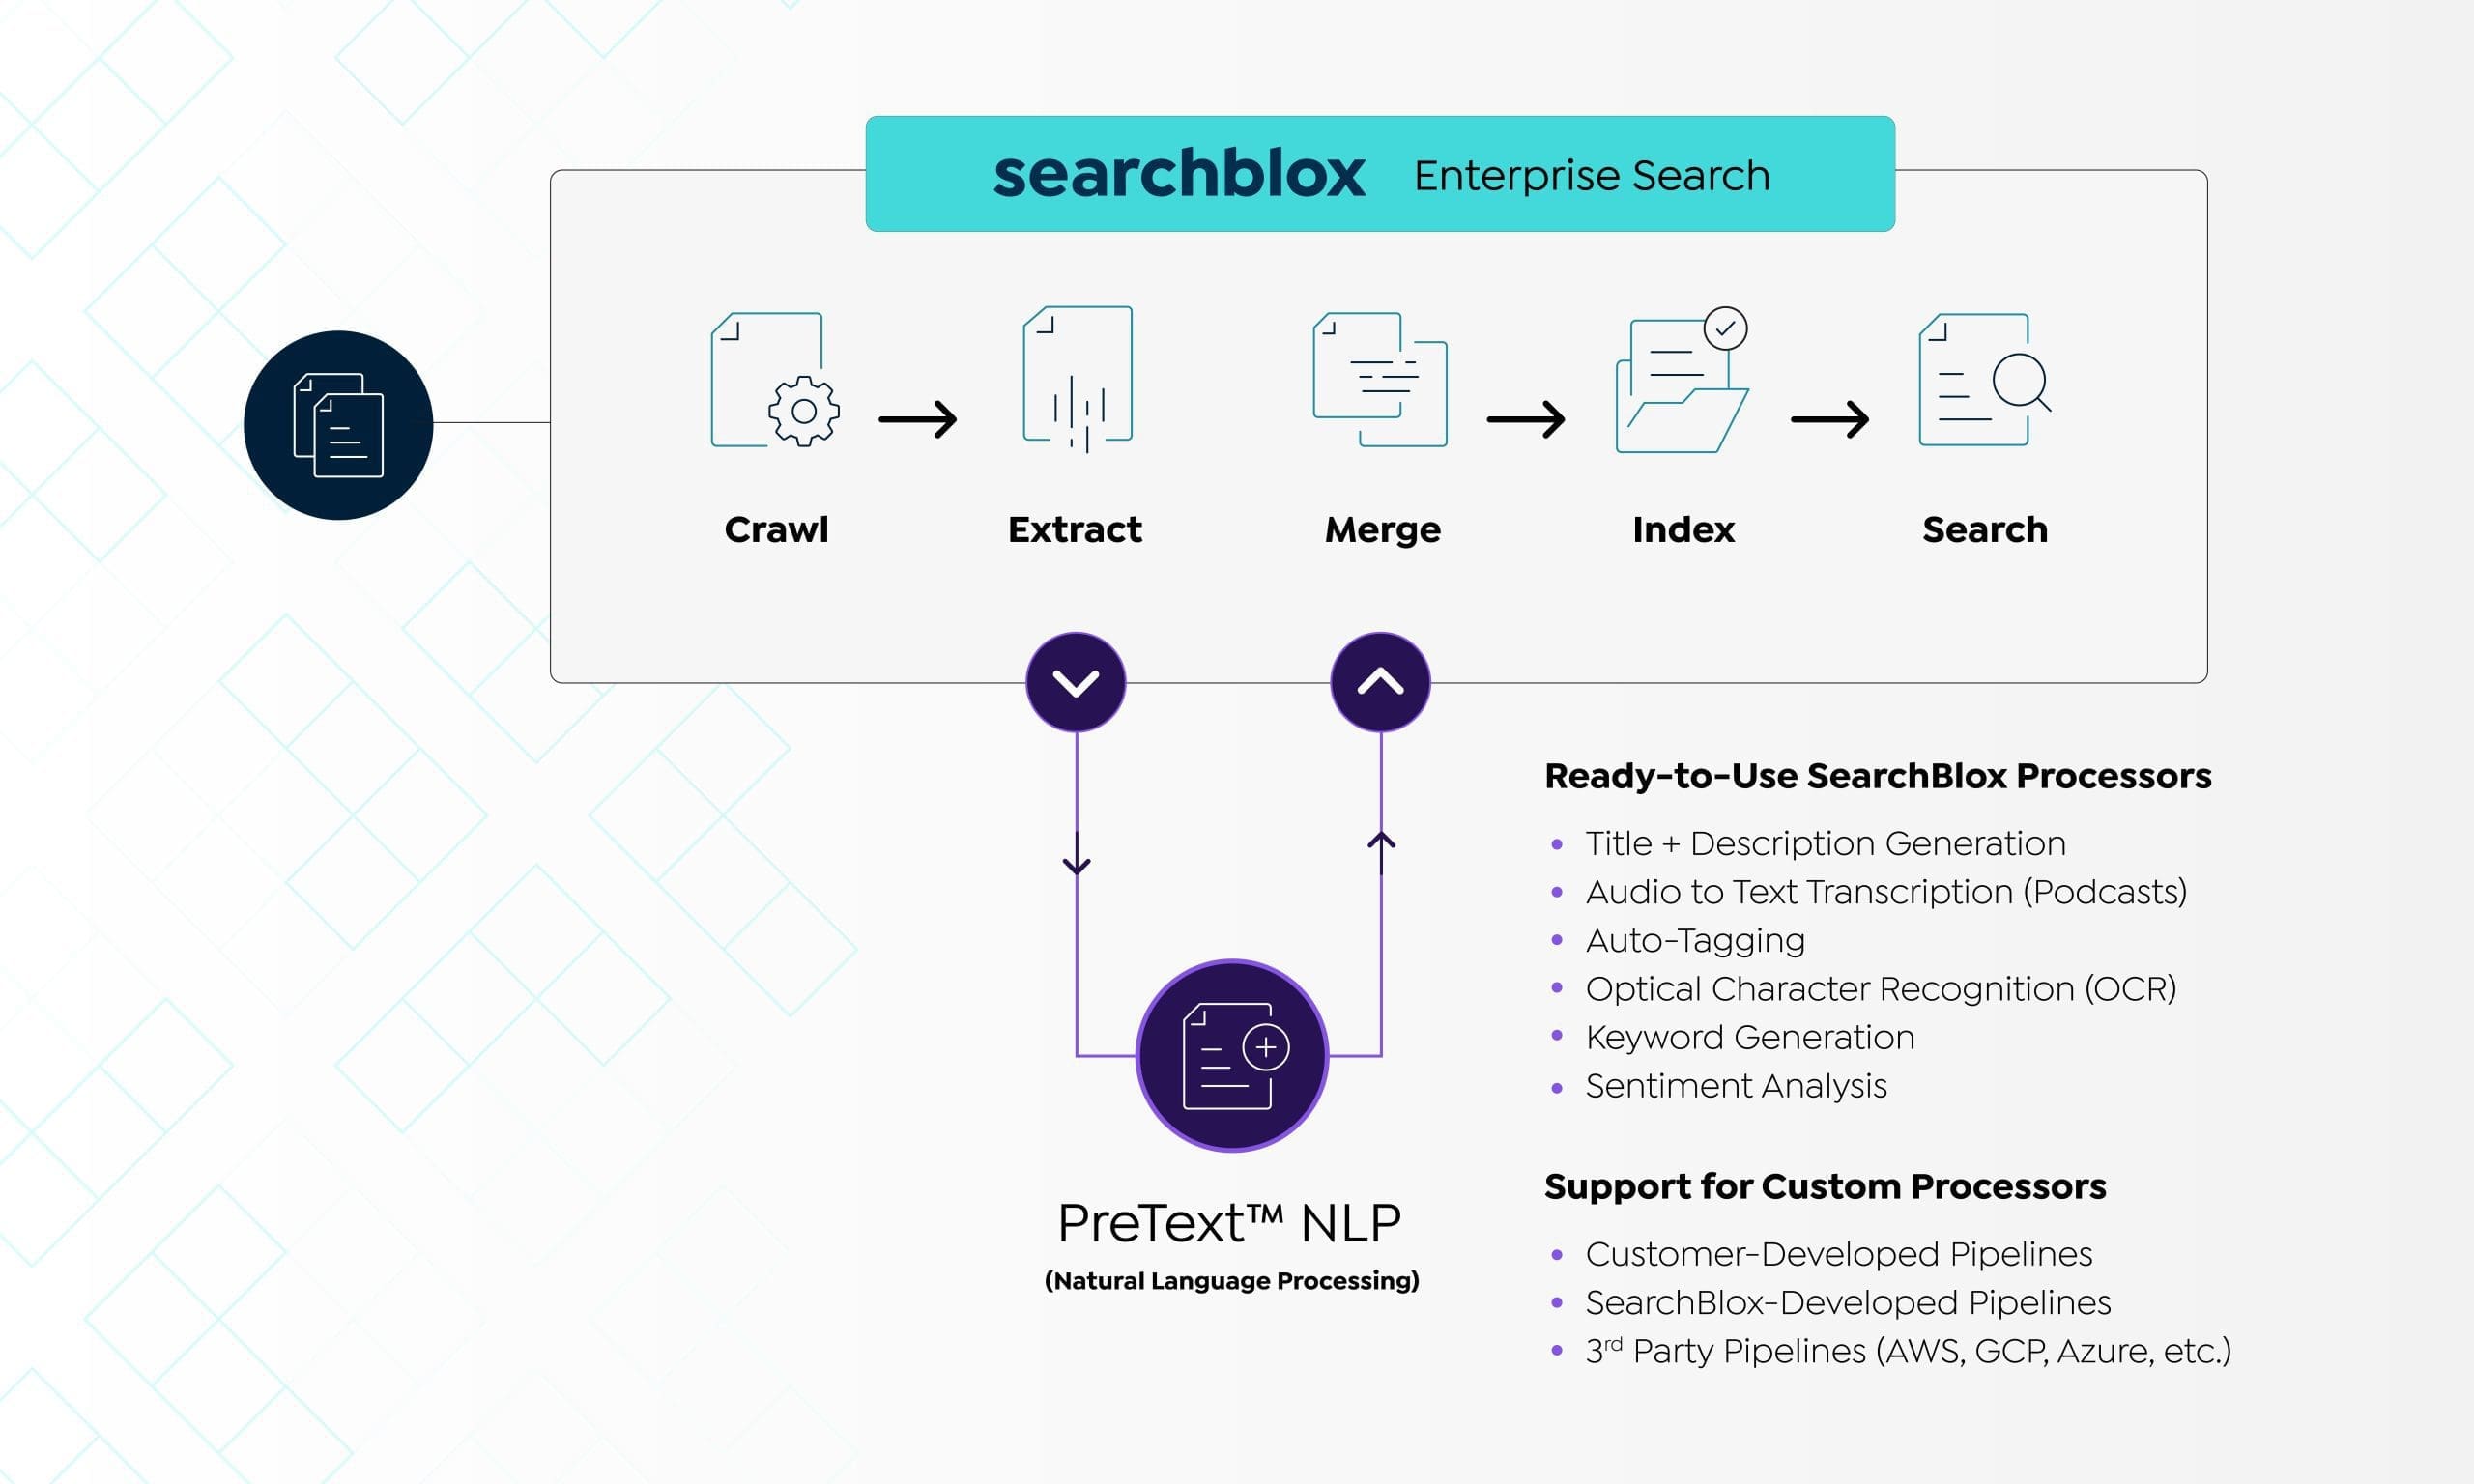 PreText™ NLP, SearchBlox